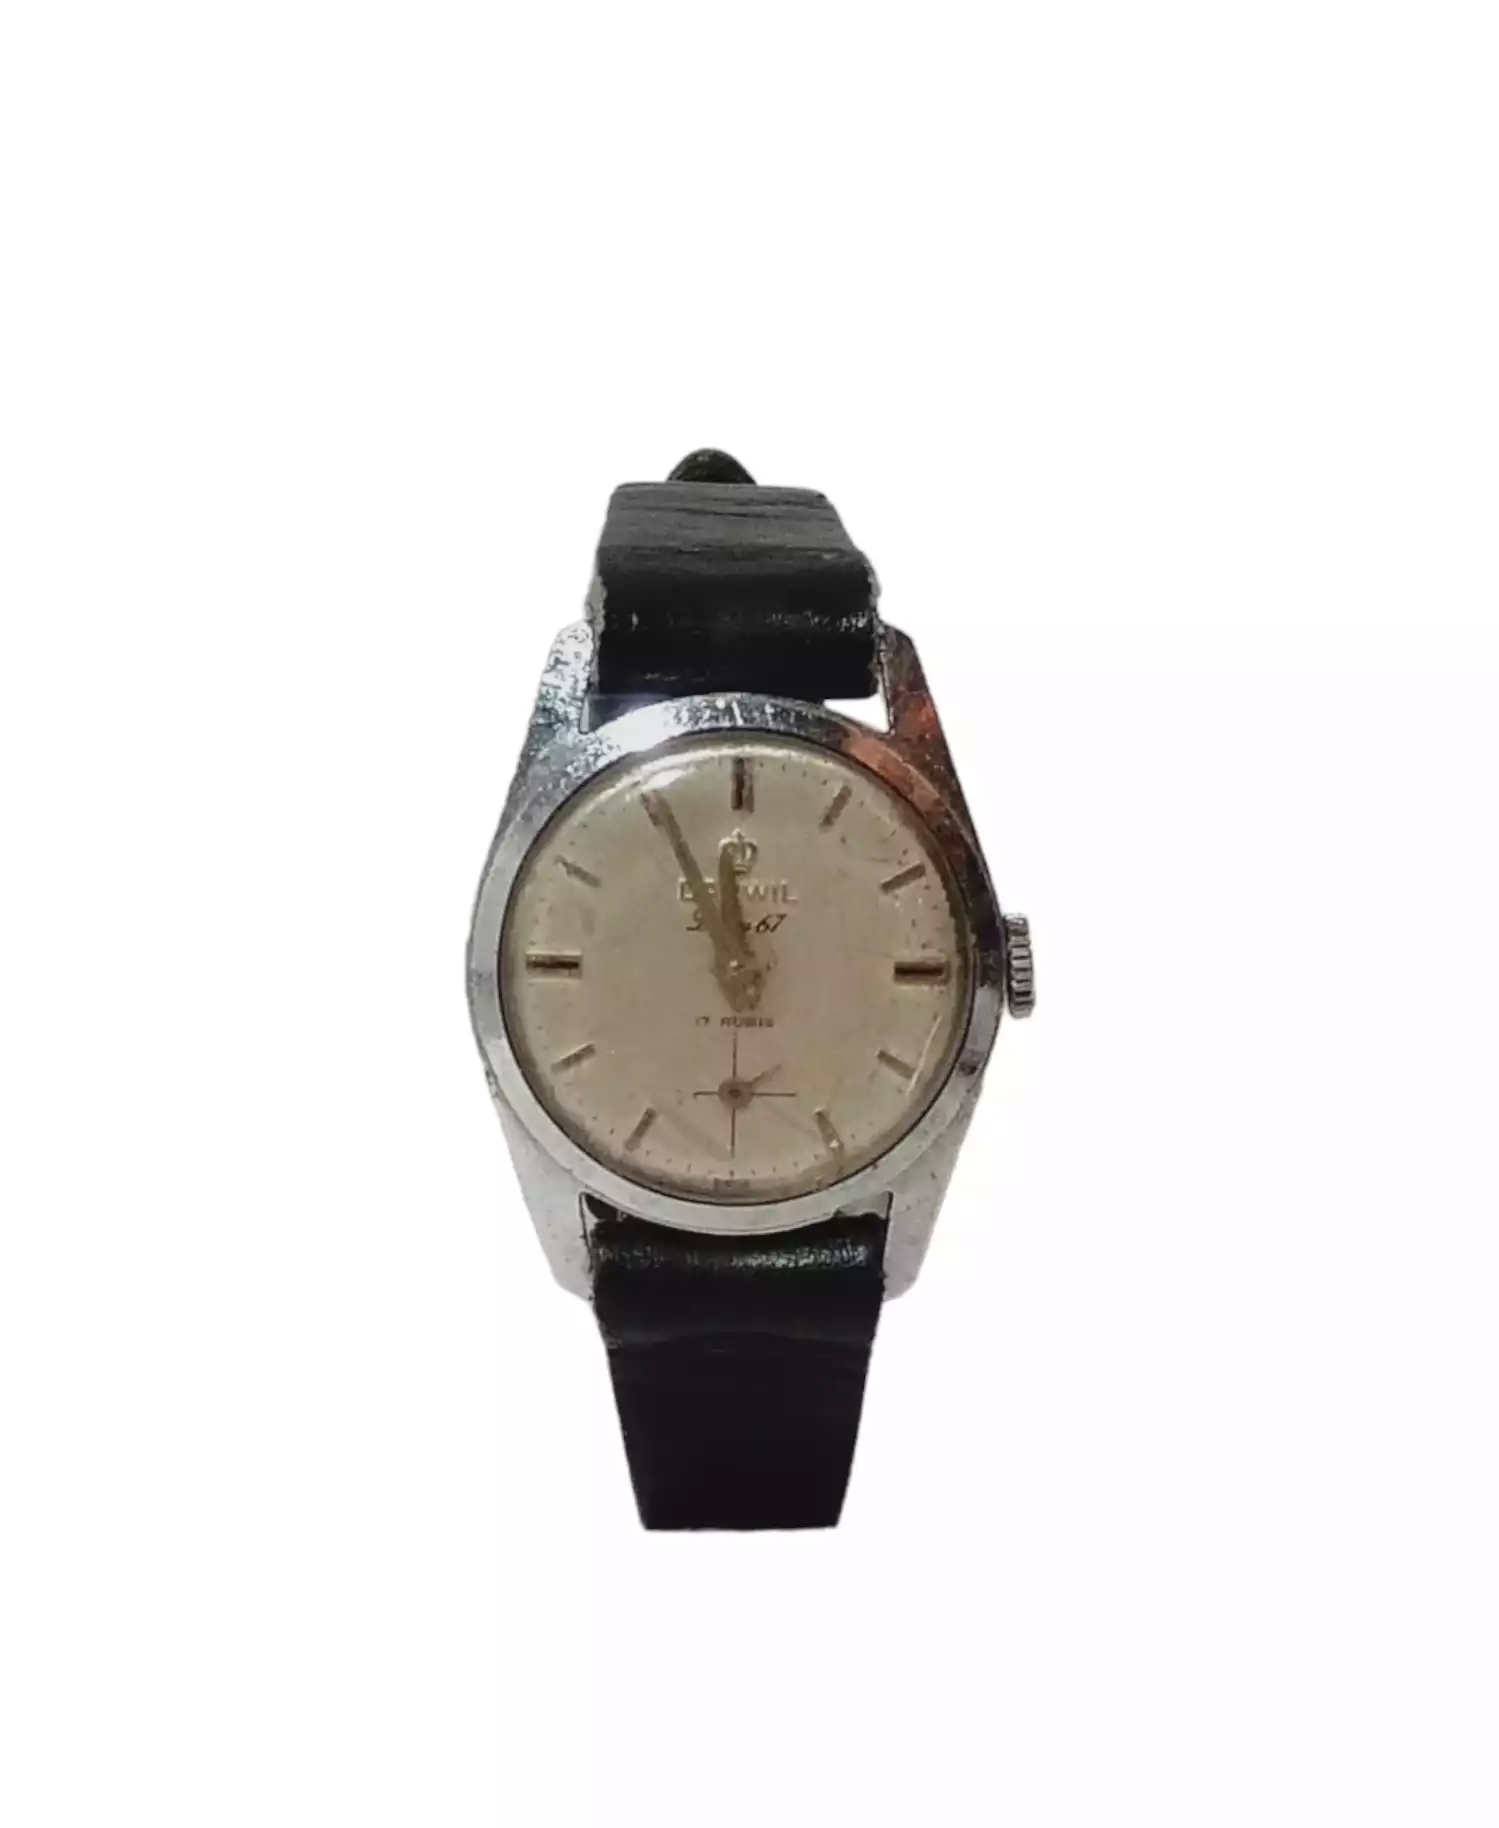 Vintage Watch by Darwil Suisse